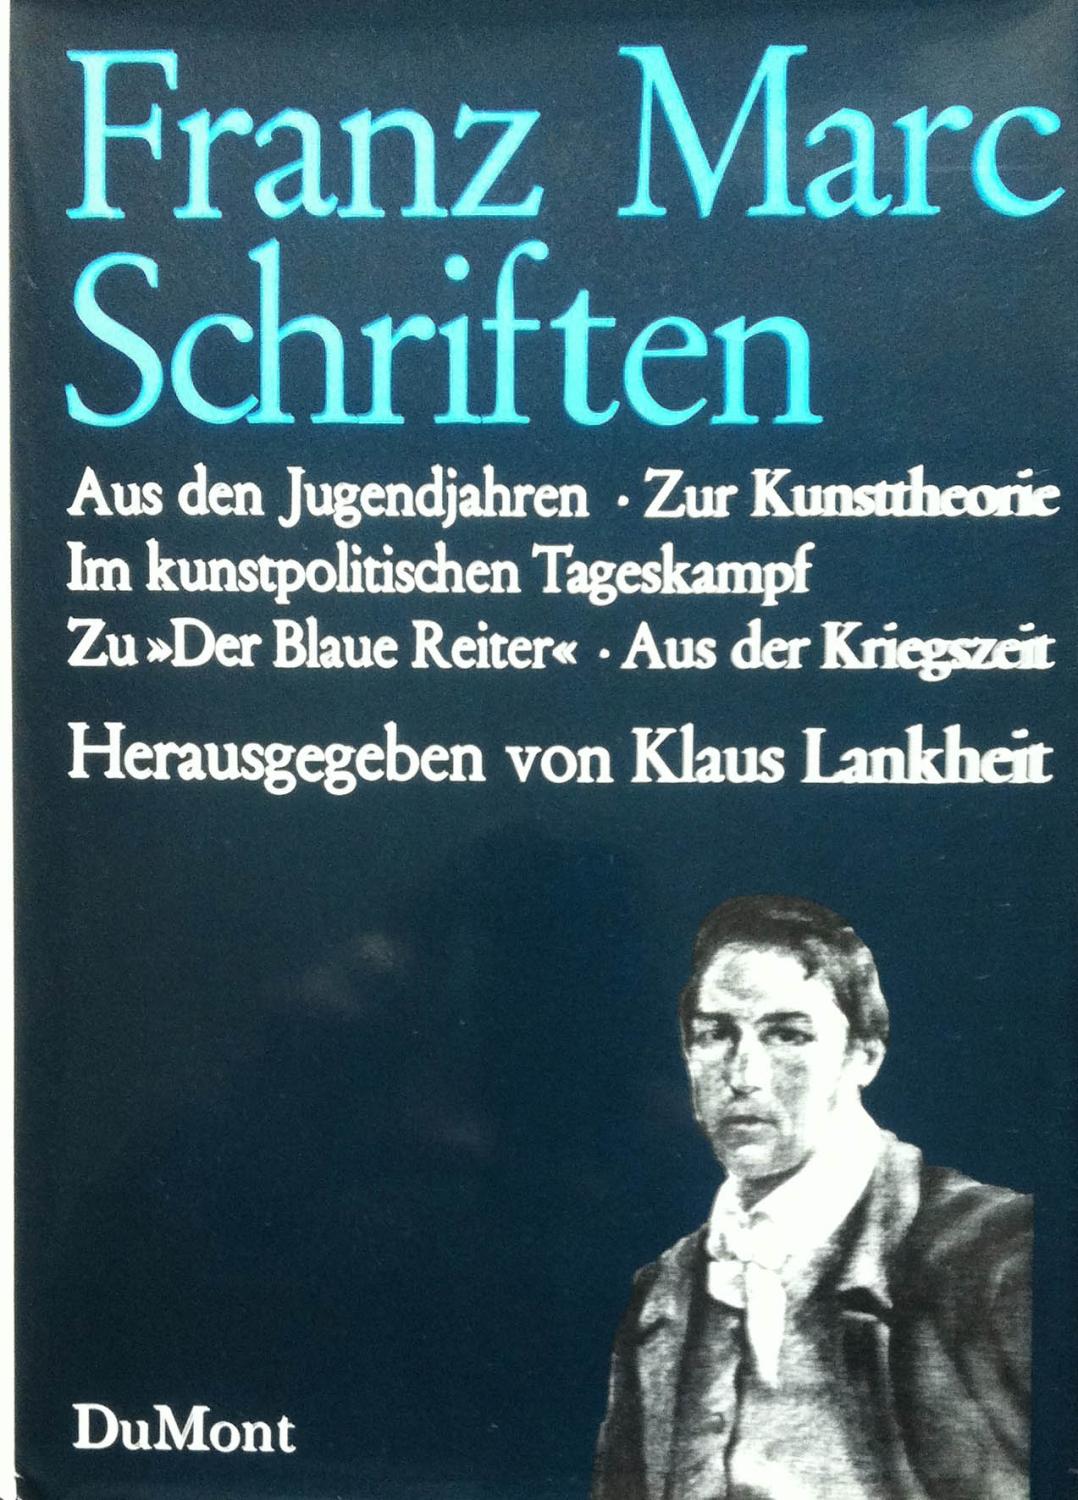 Marc, Franz. Schriften. Aus den Jugendjahren, Zur Kunsttheorie, Im Kunstpolitischen Tageskampf, Zu Der Blaue Reiter, Aus der Kriegszeit.